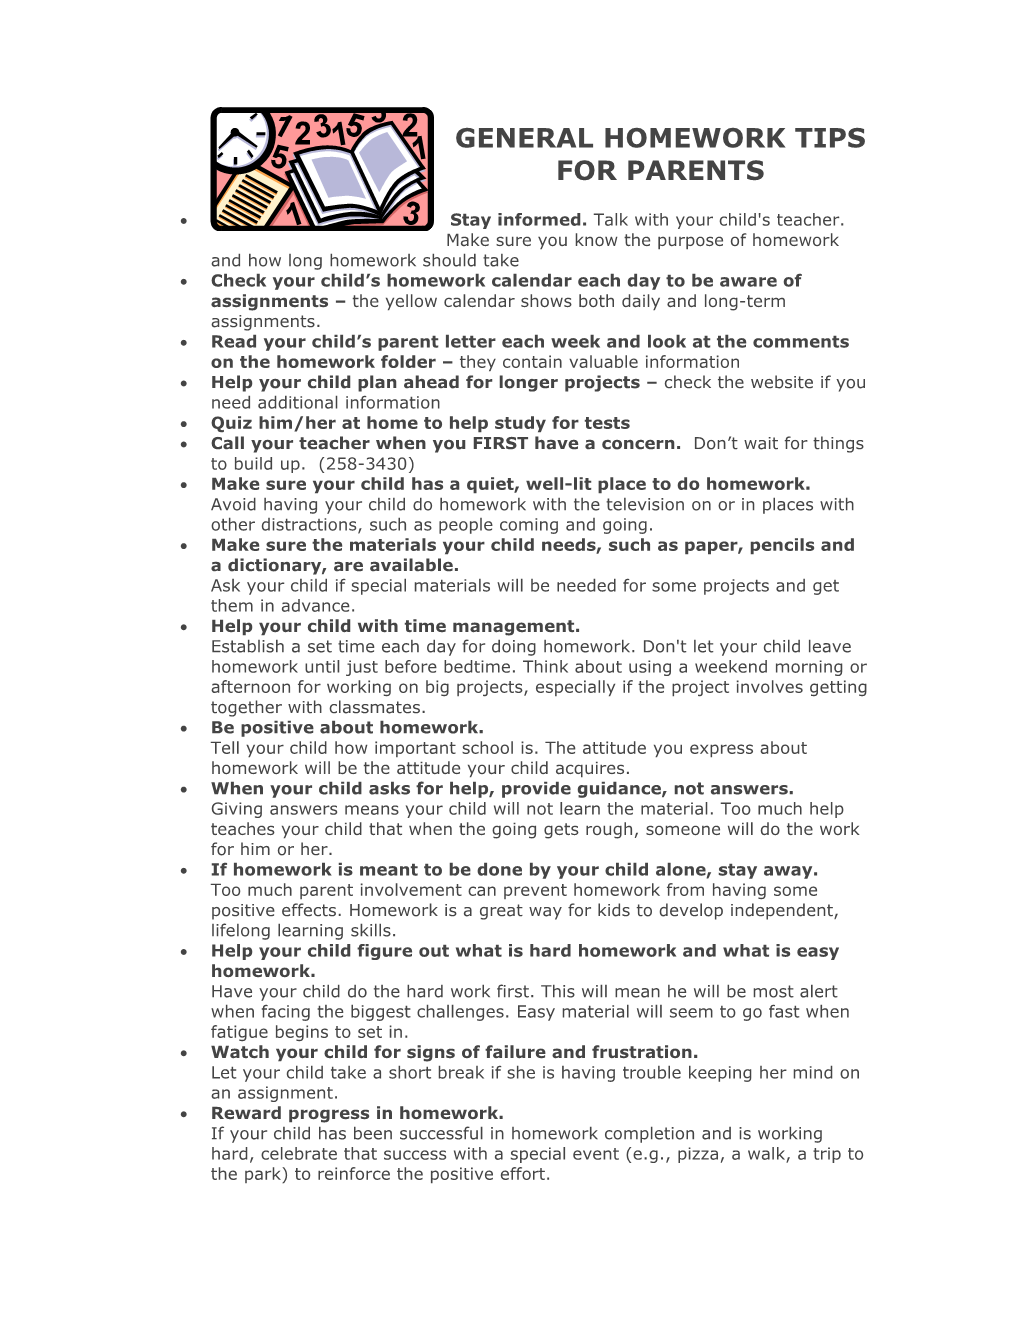 General Homework Tips for Parents